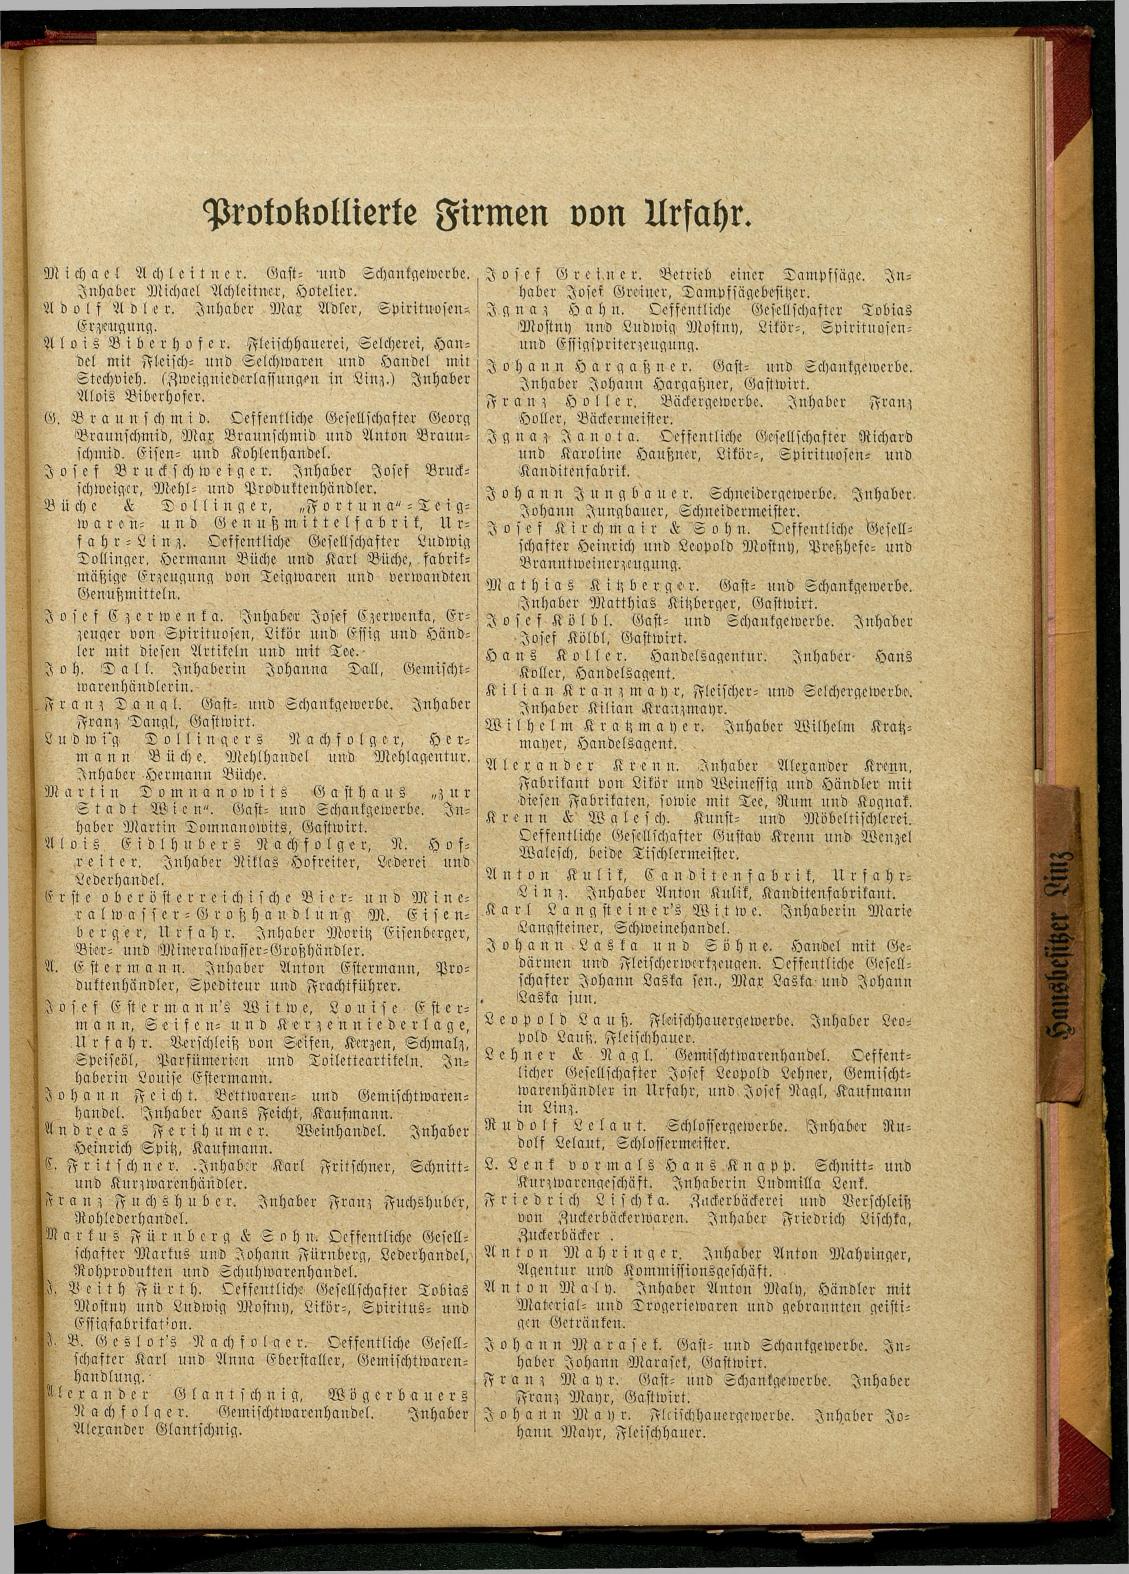 Allgemeines Wohnungs-, Handels- und Gewerbe-Adreßbuch der Städte Linz und Urfahr. Linz 1914. - Seite 289